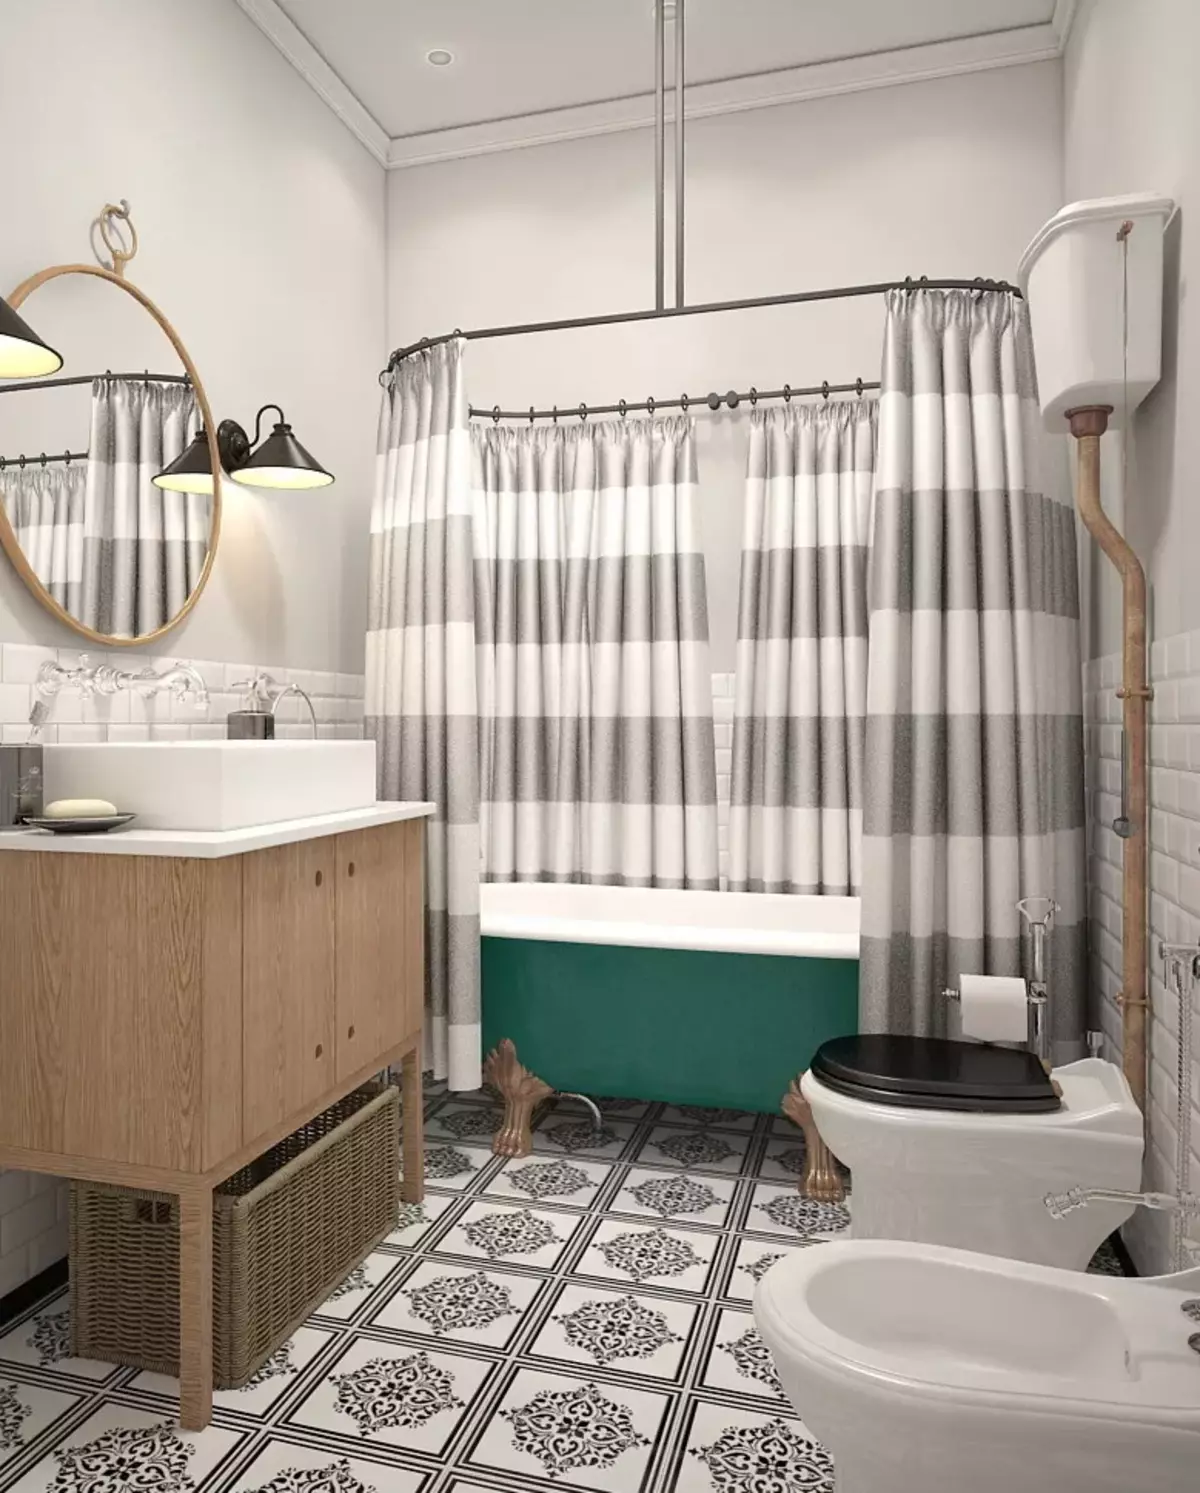 Badezimmer im skandinavischen Stil (66 Fotos): Innenarchitektur von einem kleinen Raum 3 und 4 Quadratmetern. M, die Ideen des Designs eines weißen Badezimmers, der Wahl des Zubehörs 21439_66